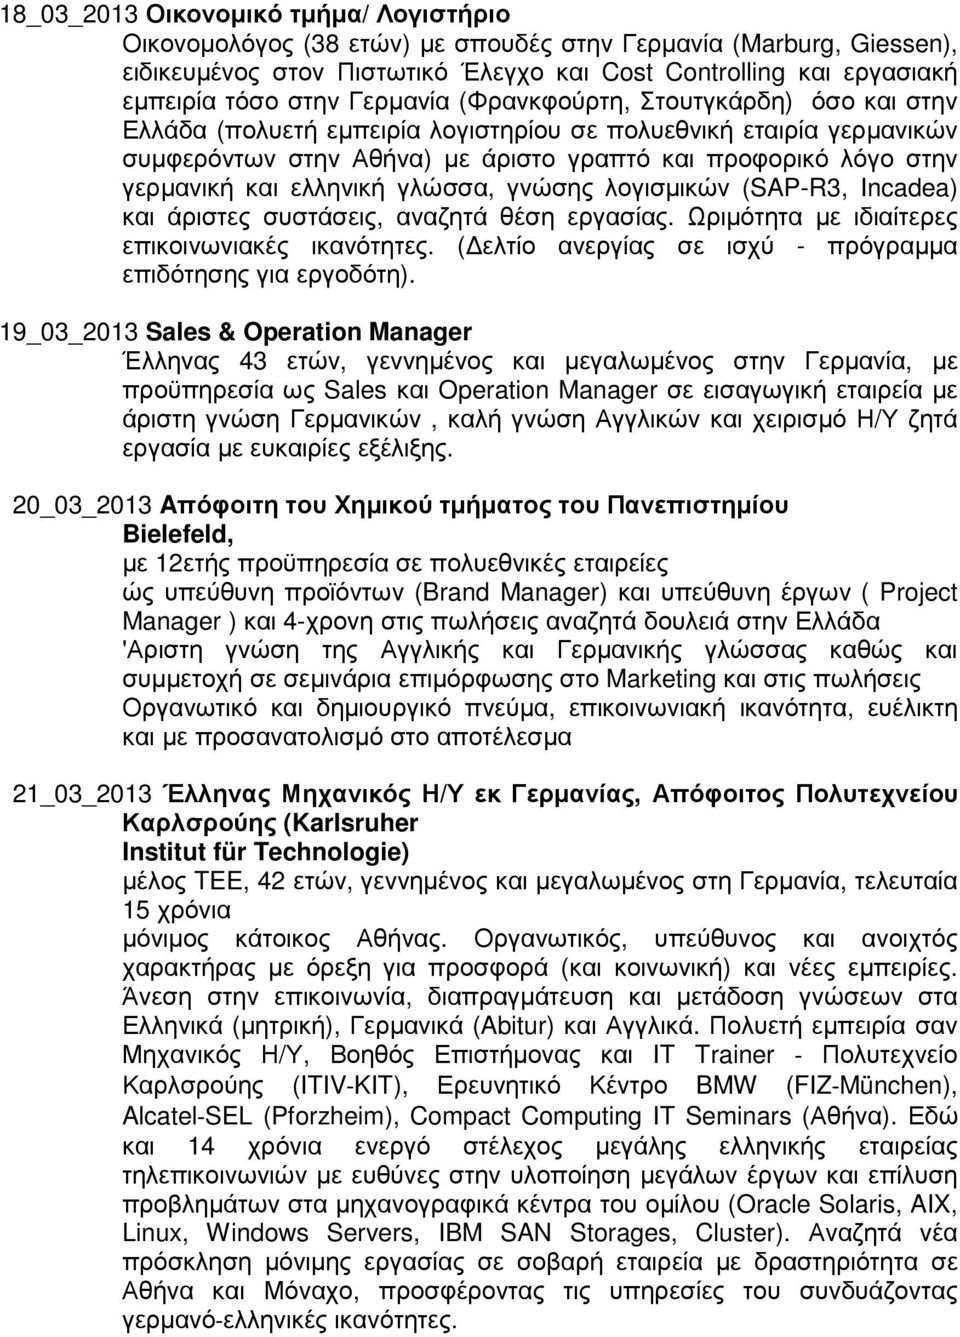 ελληνική γλώσσα, γνώσης λογισµικών (SAP-R3, Incadea) και άριστες συστάσεις, αναζητά θέση εργασίας. Ωριµότητα µε ιδιαίτερες επικοινωνιακές ικανότητες.